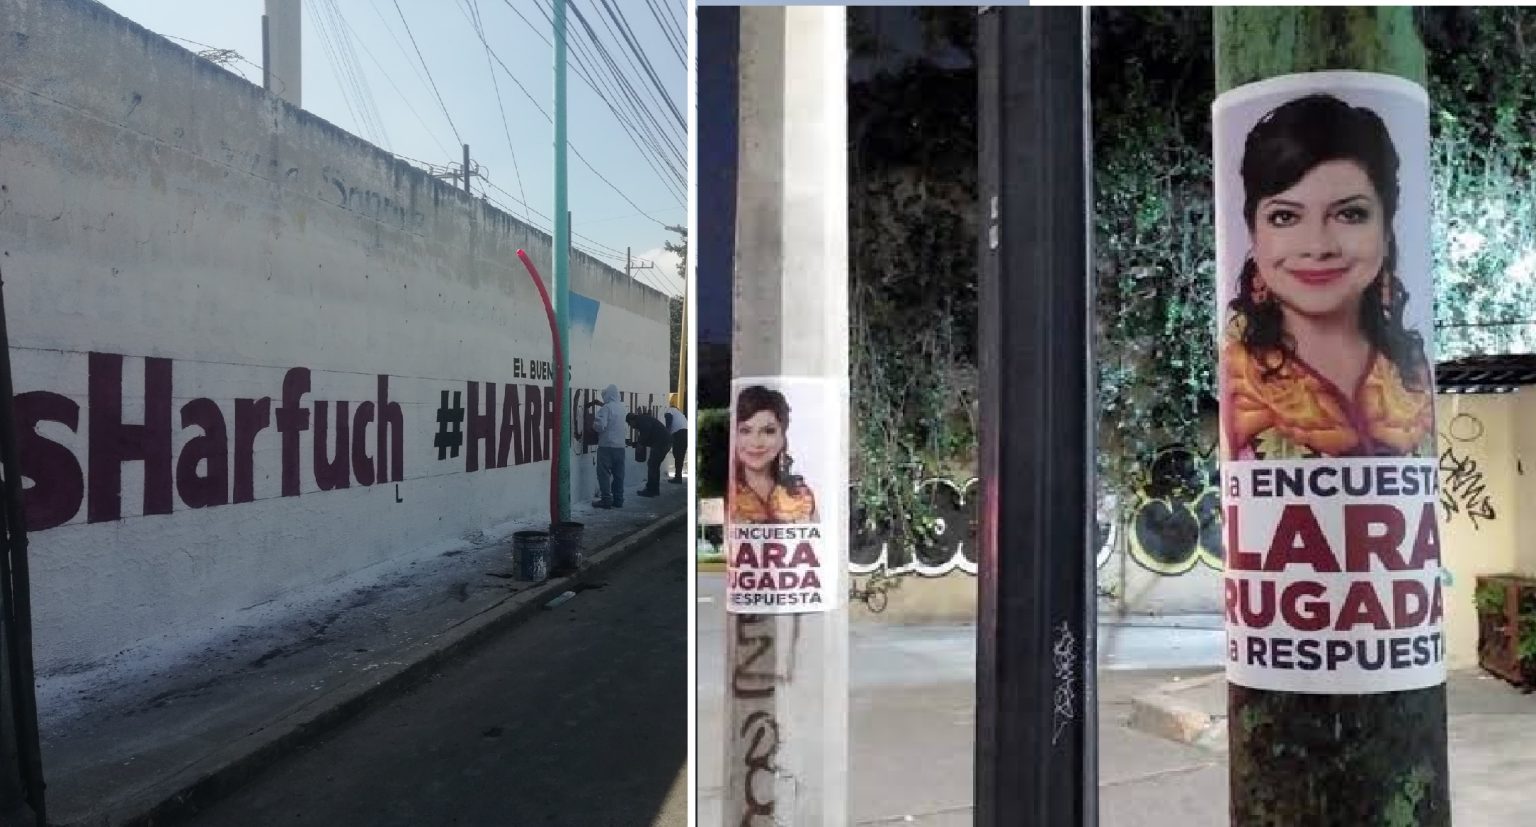 Los aspirantes a la candidatura de Morena para la Jefatura de Gobierno, Clara Brugada y Omar García Harfuch tapizaron la Ciudad de México con pintas en bardas, fotografías pegadas en postes y lonas. FOTOS: X / @JoeCast84 y @Nevyt01